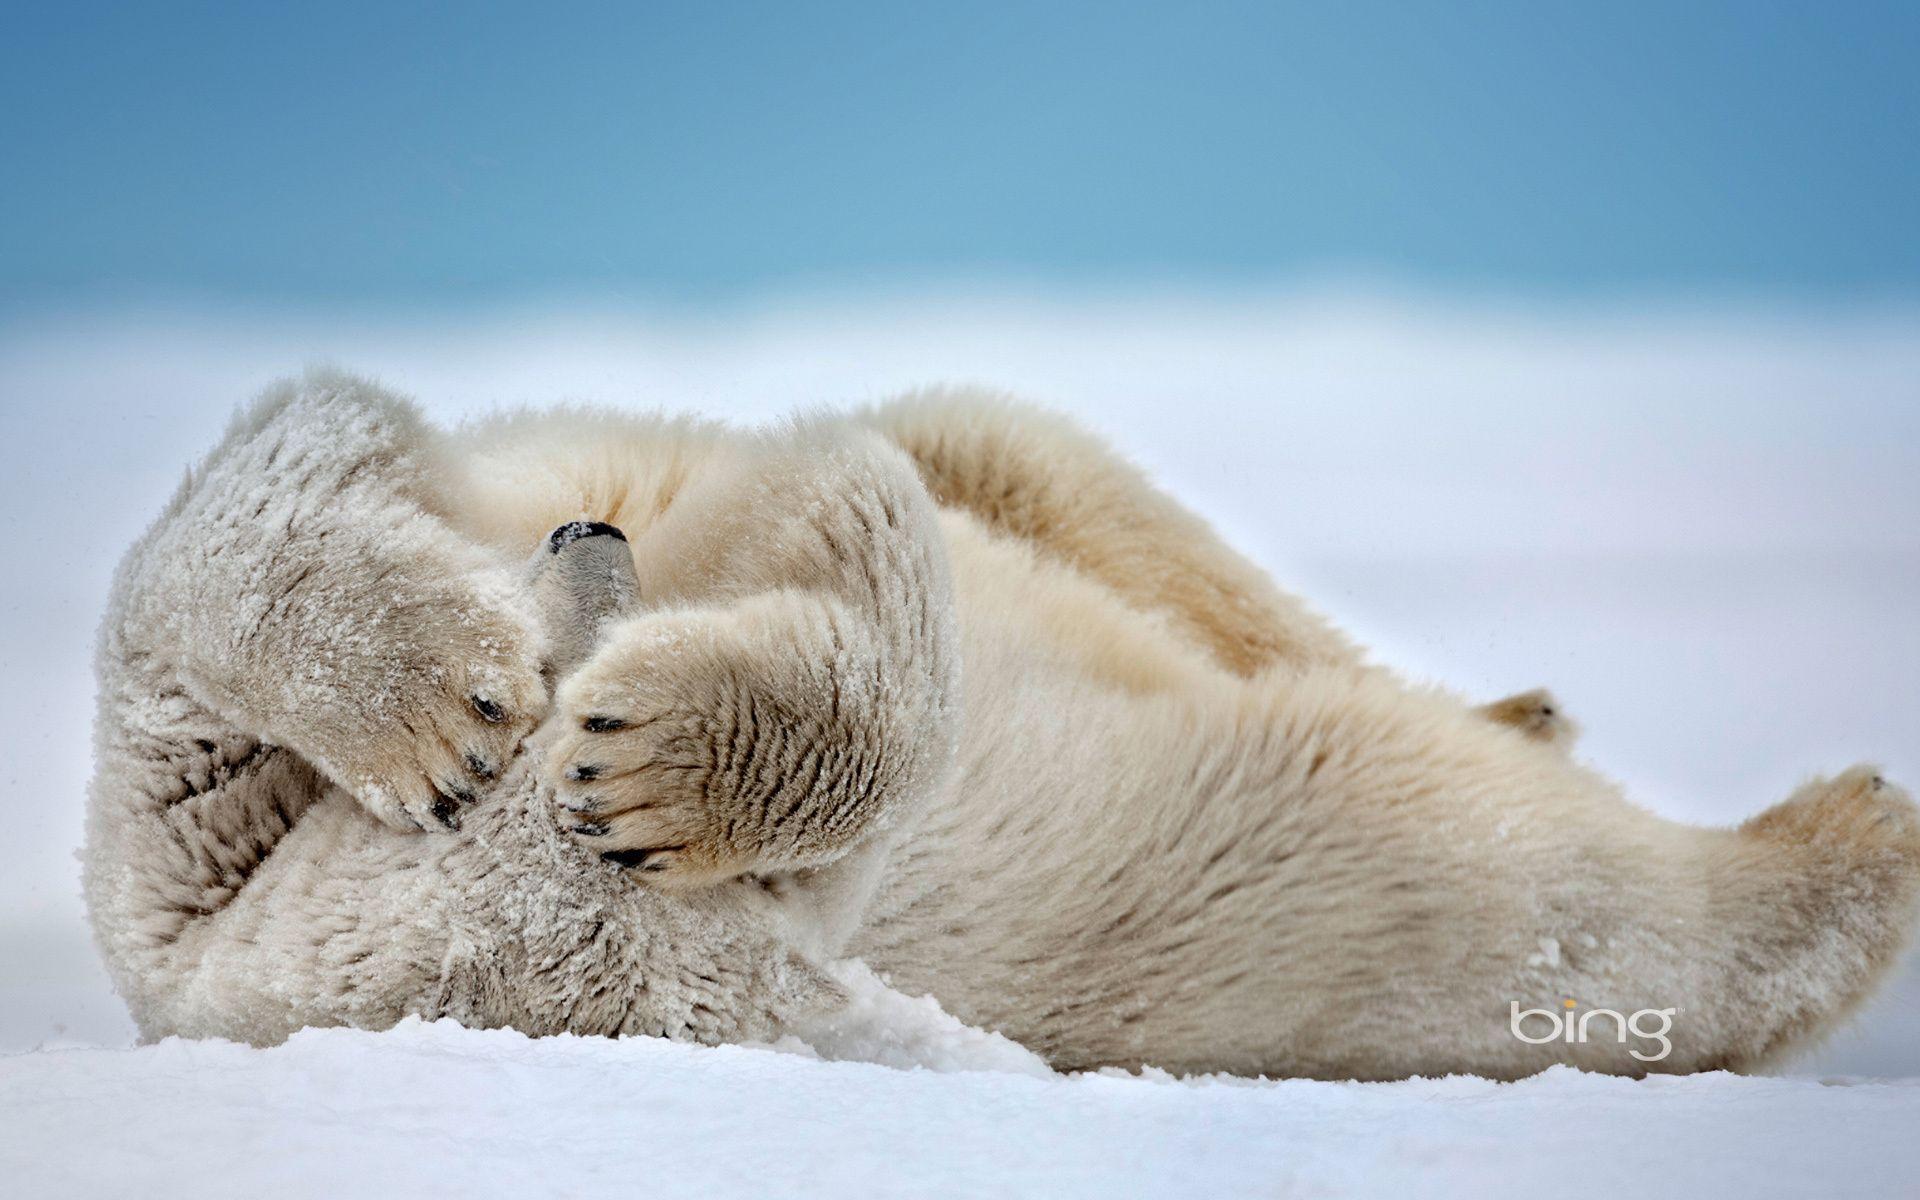 Bing, Polar Bear, Bear, White Bear, Polar Bear Sleeping